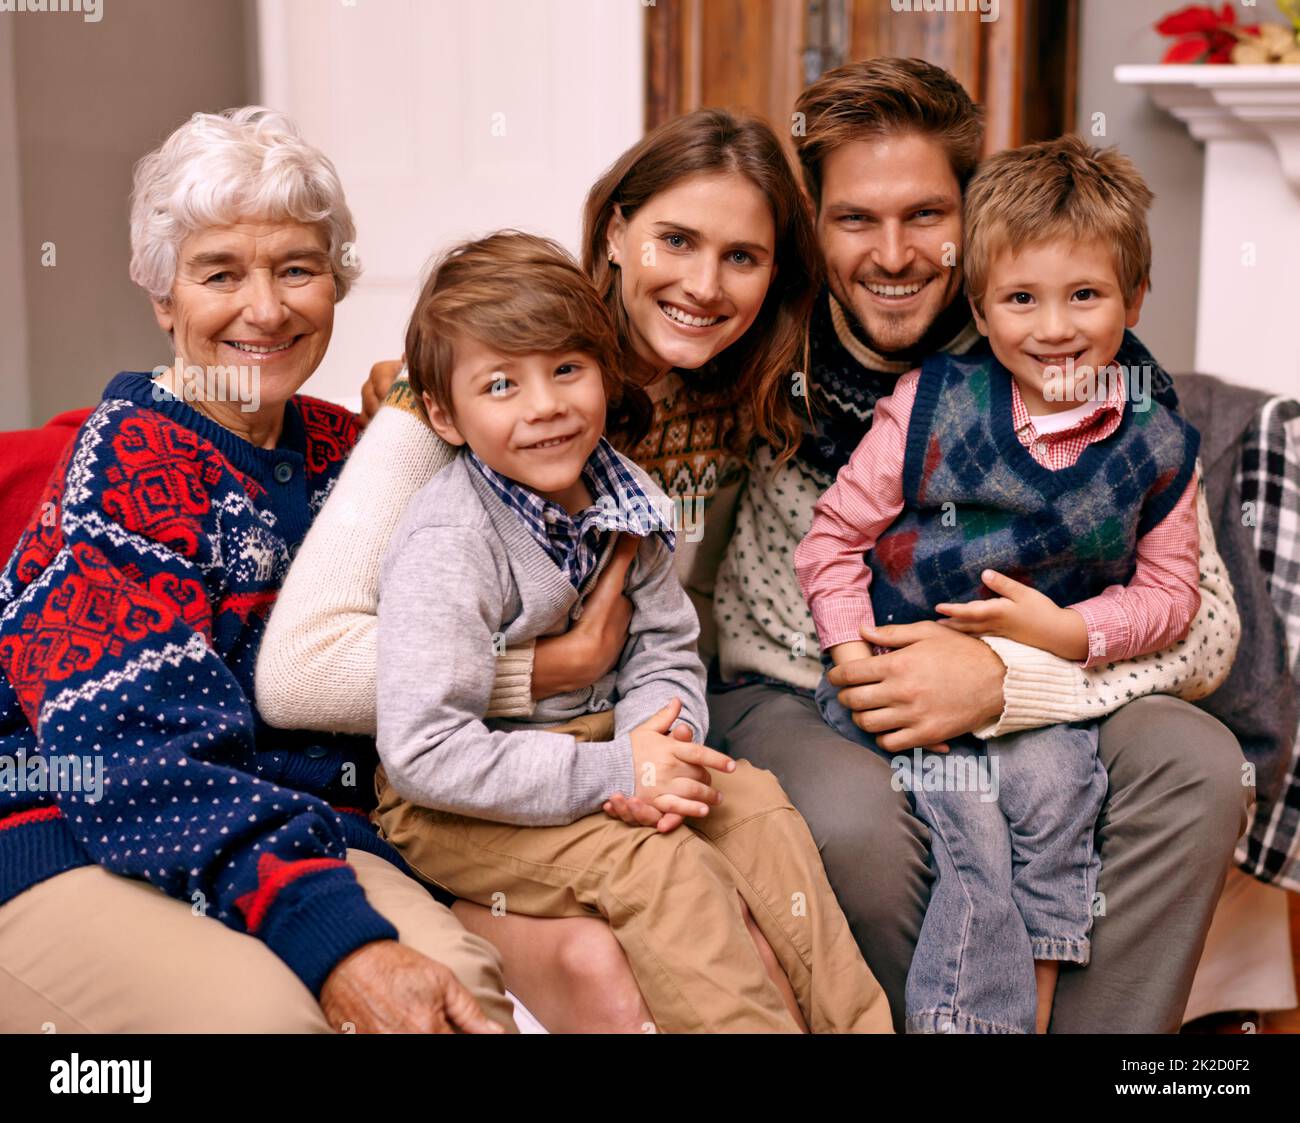 Weihnachten ist Familienzeit. Eine glückliche Familie mit ihrer Großmutter am Heiligabend. Stockfoto